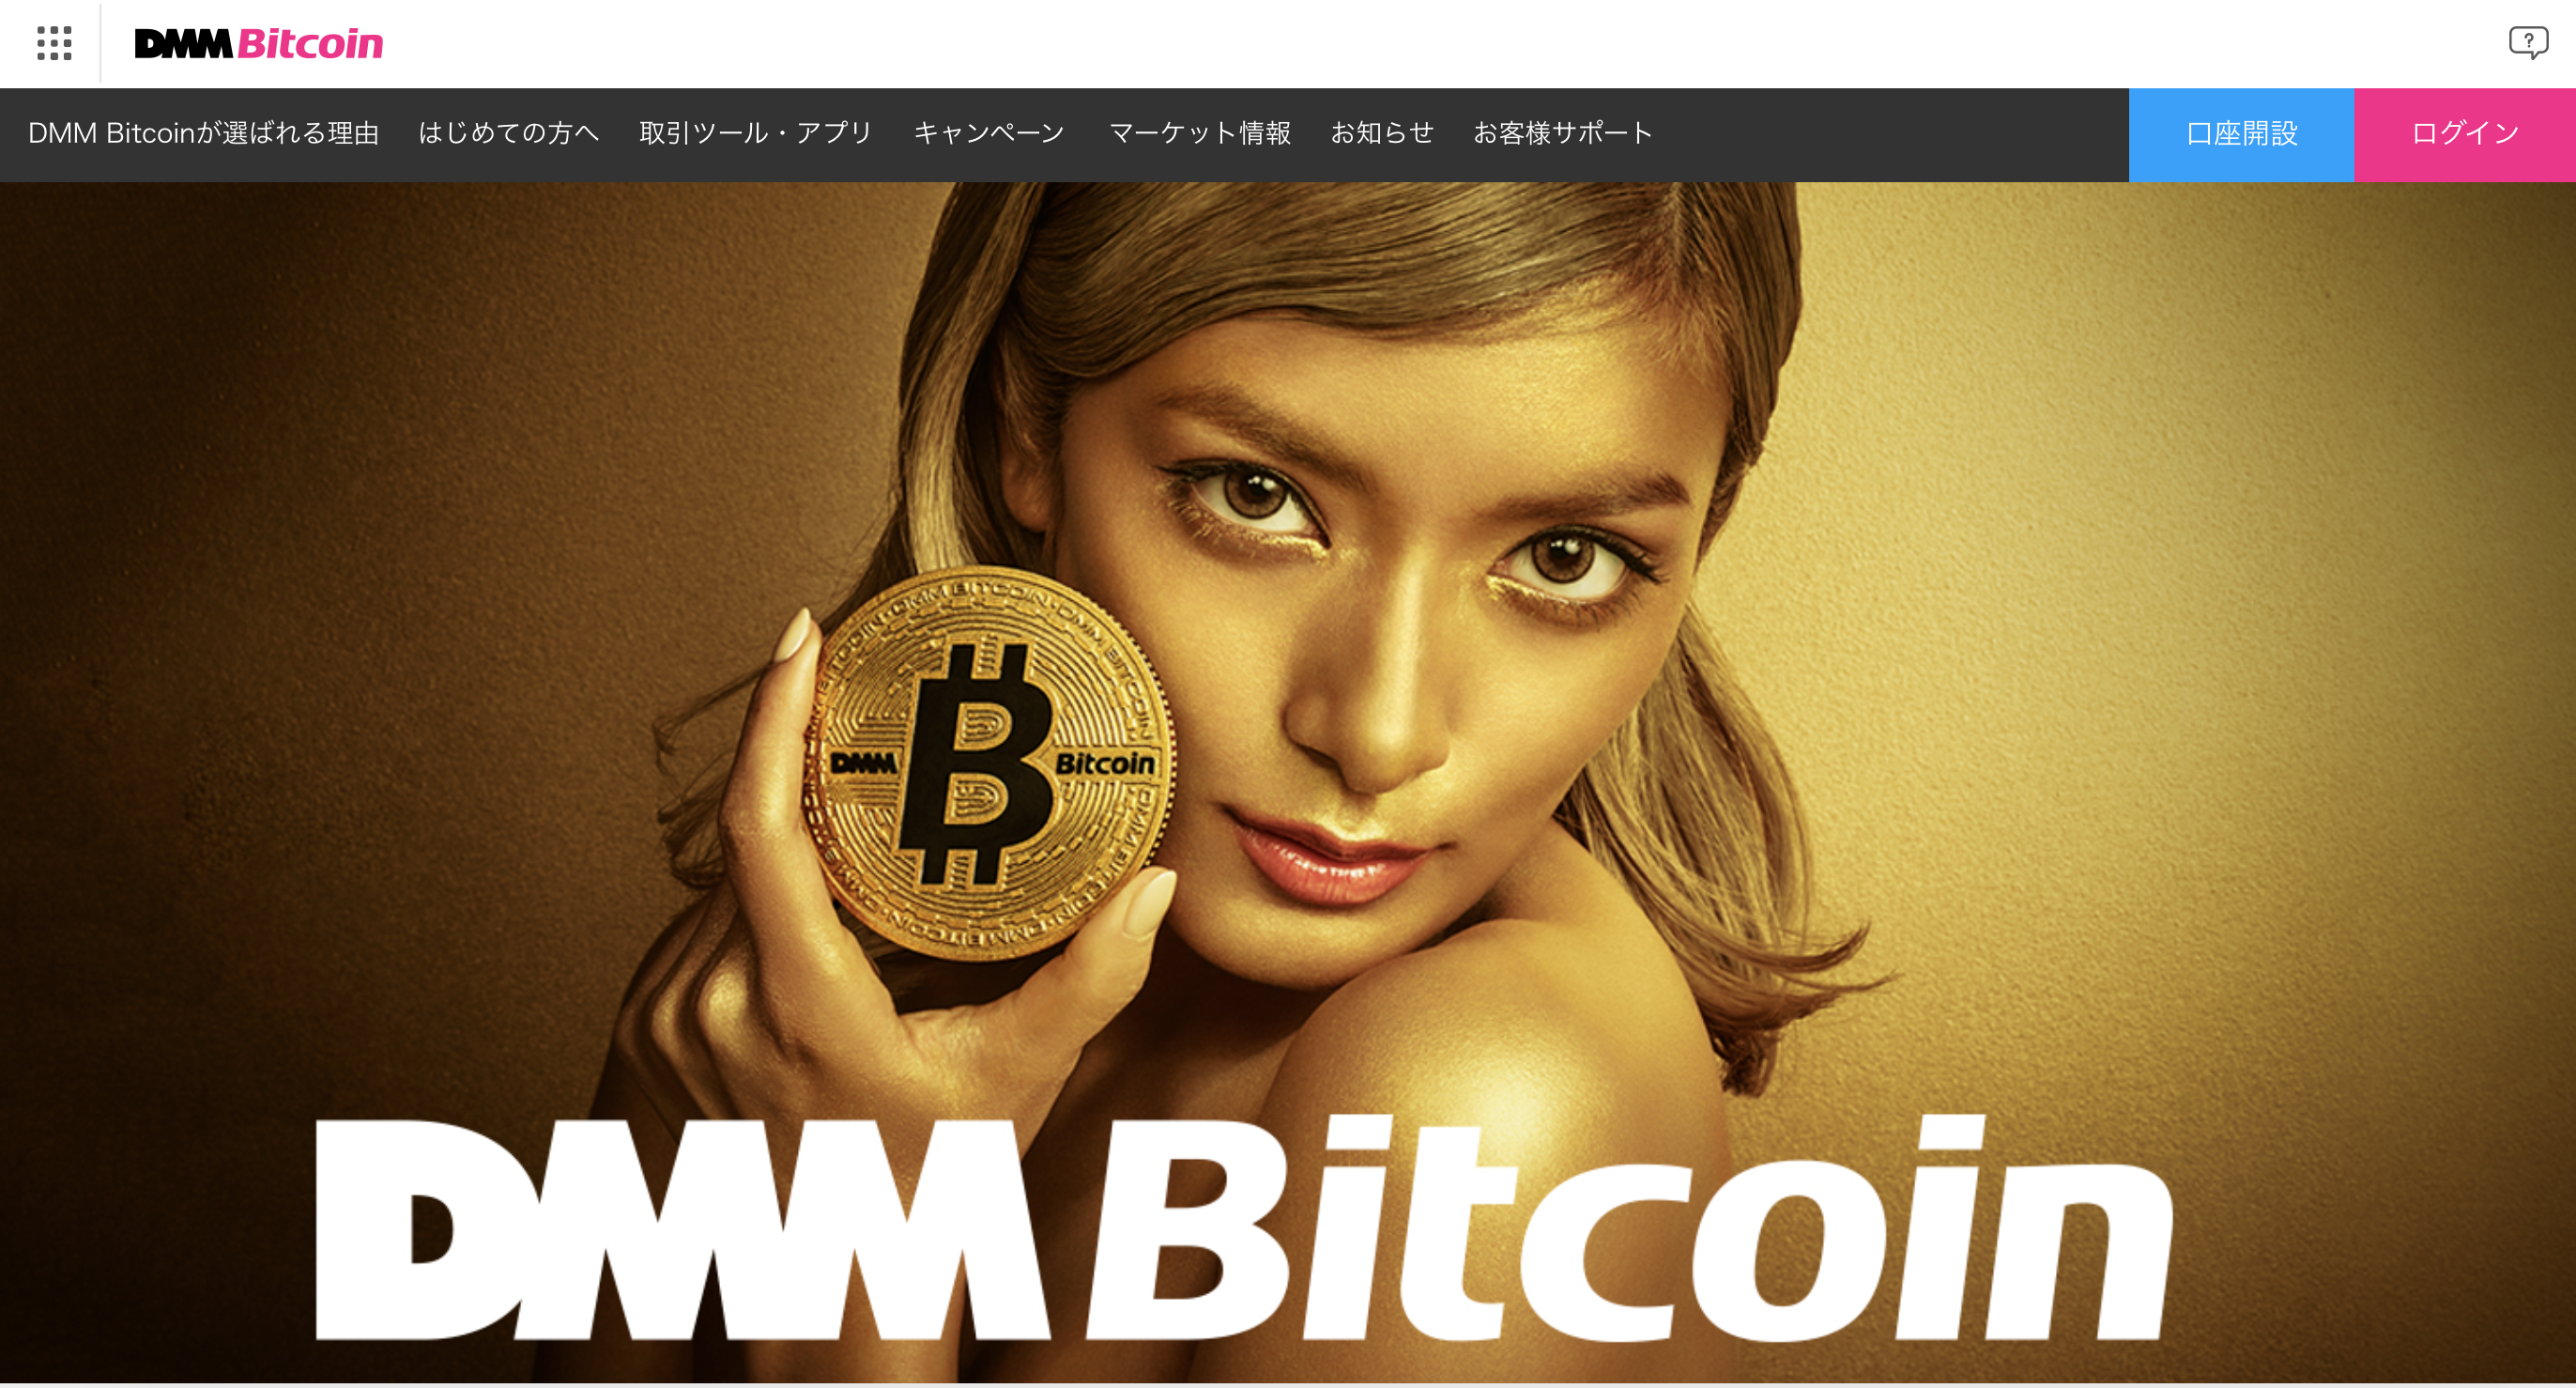 DMM bitcoin